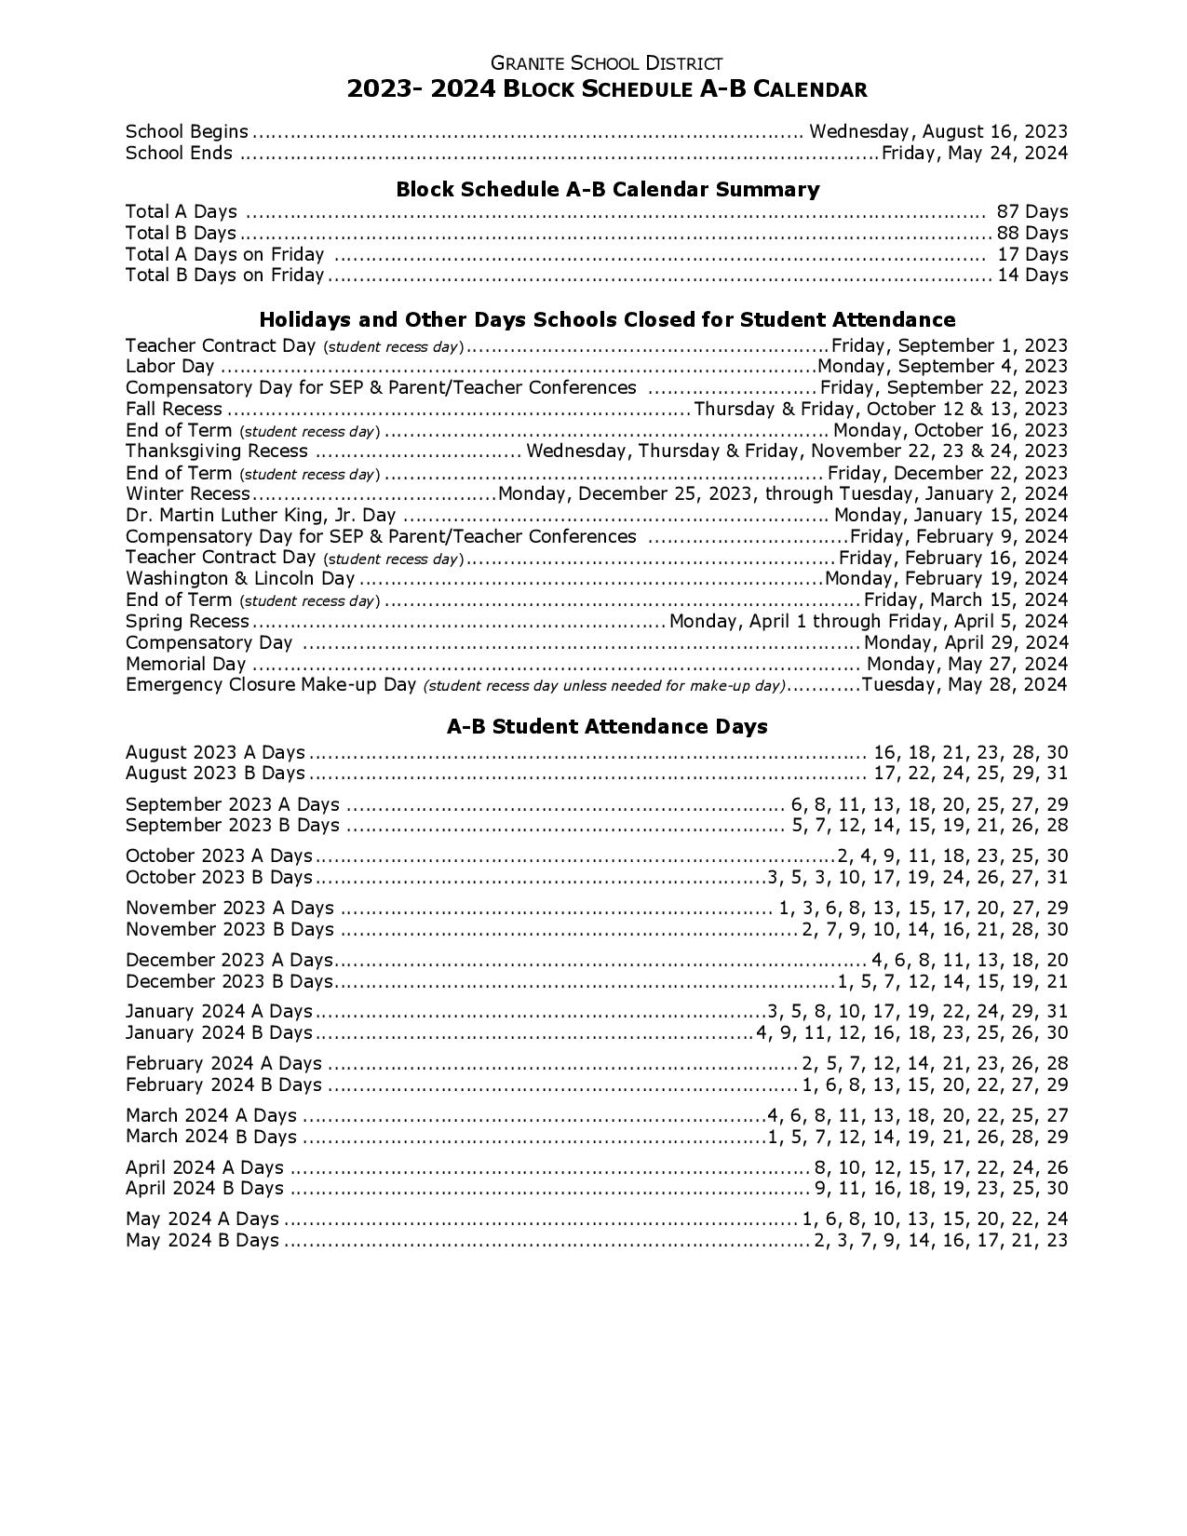 Granite School District Calendar 2023 2024 In PDF School Calendar Info